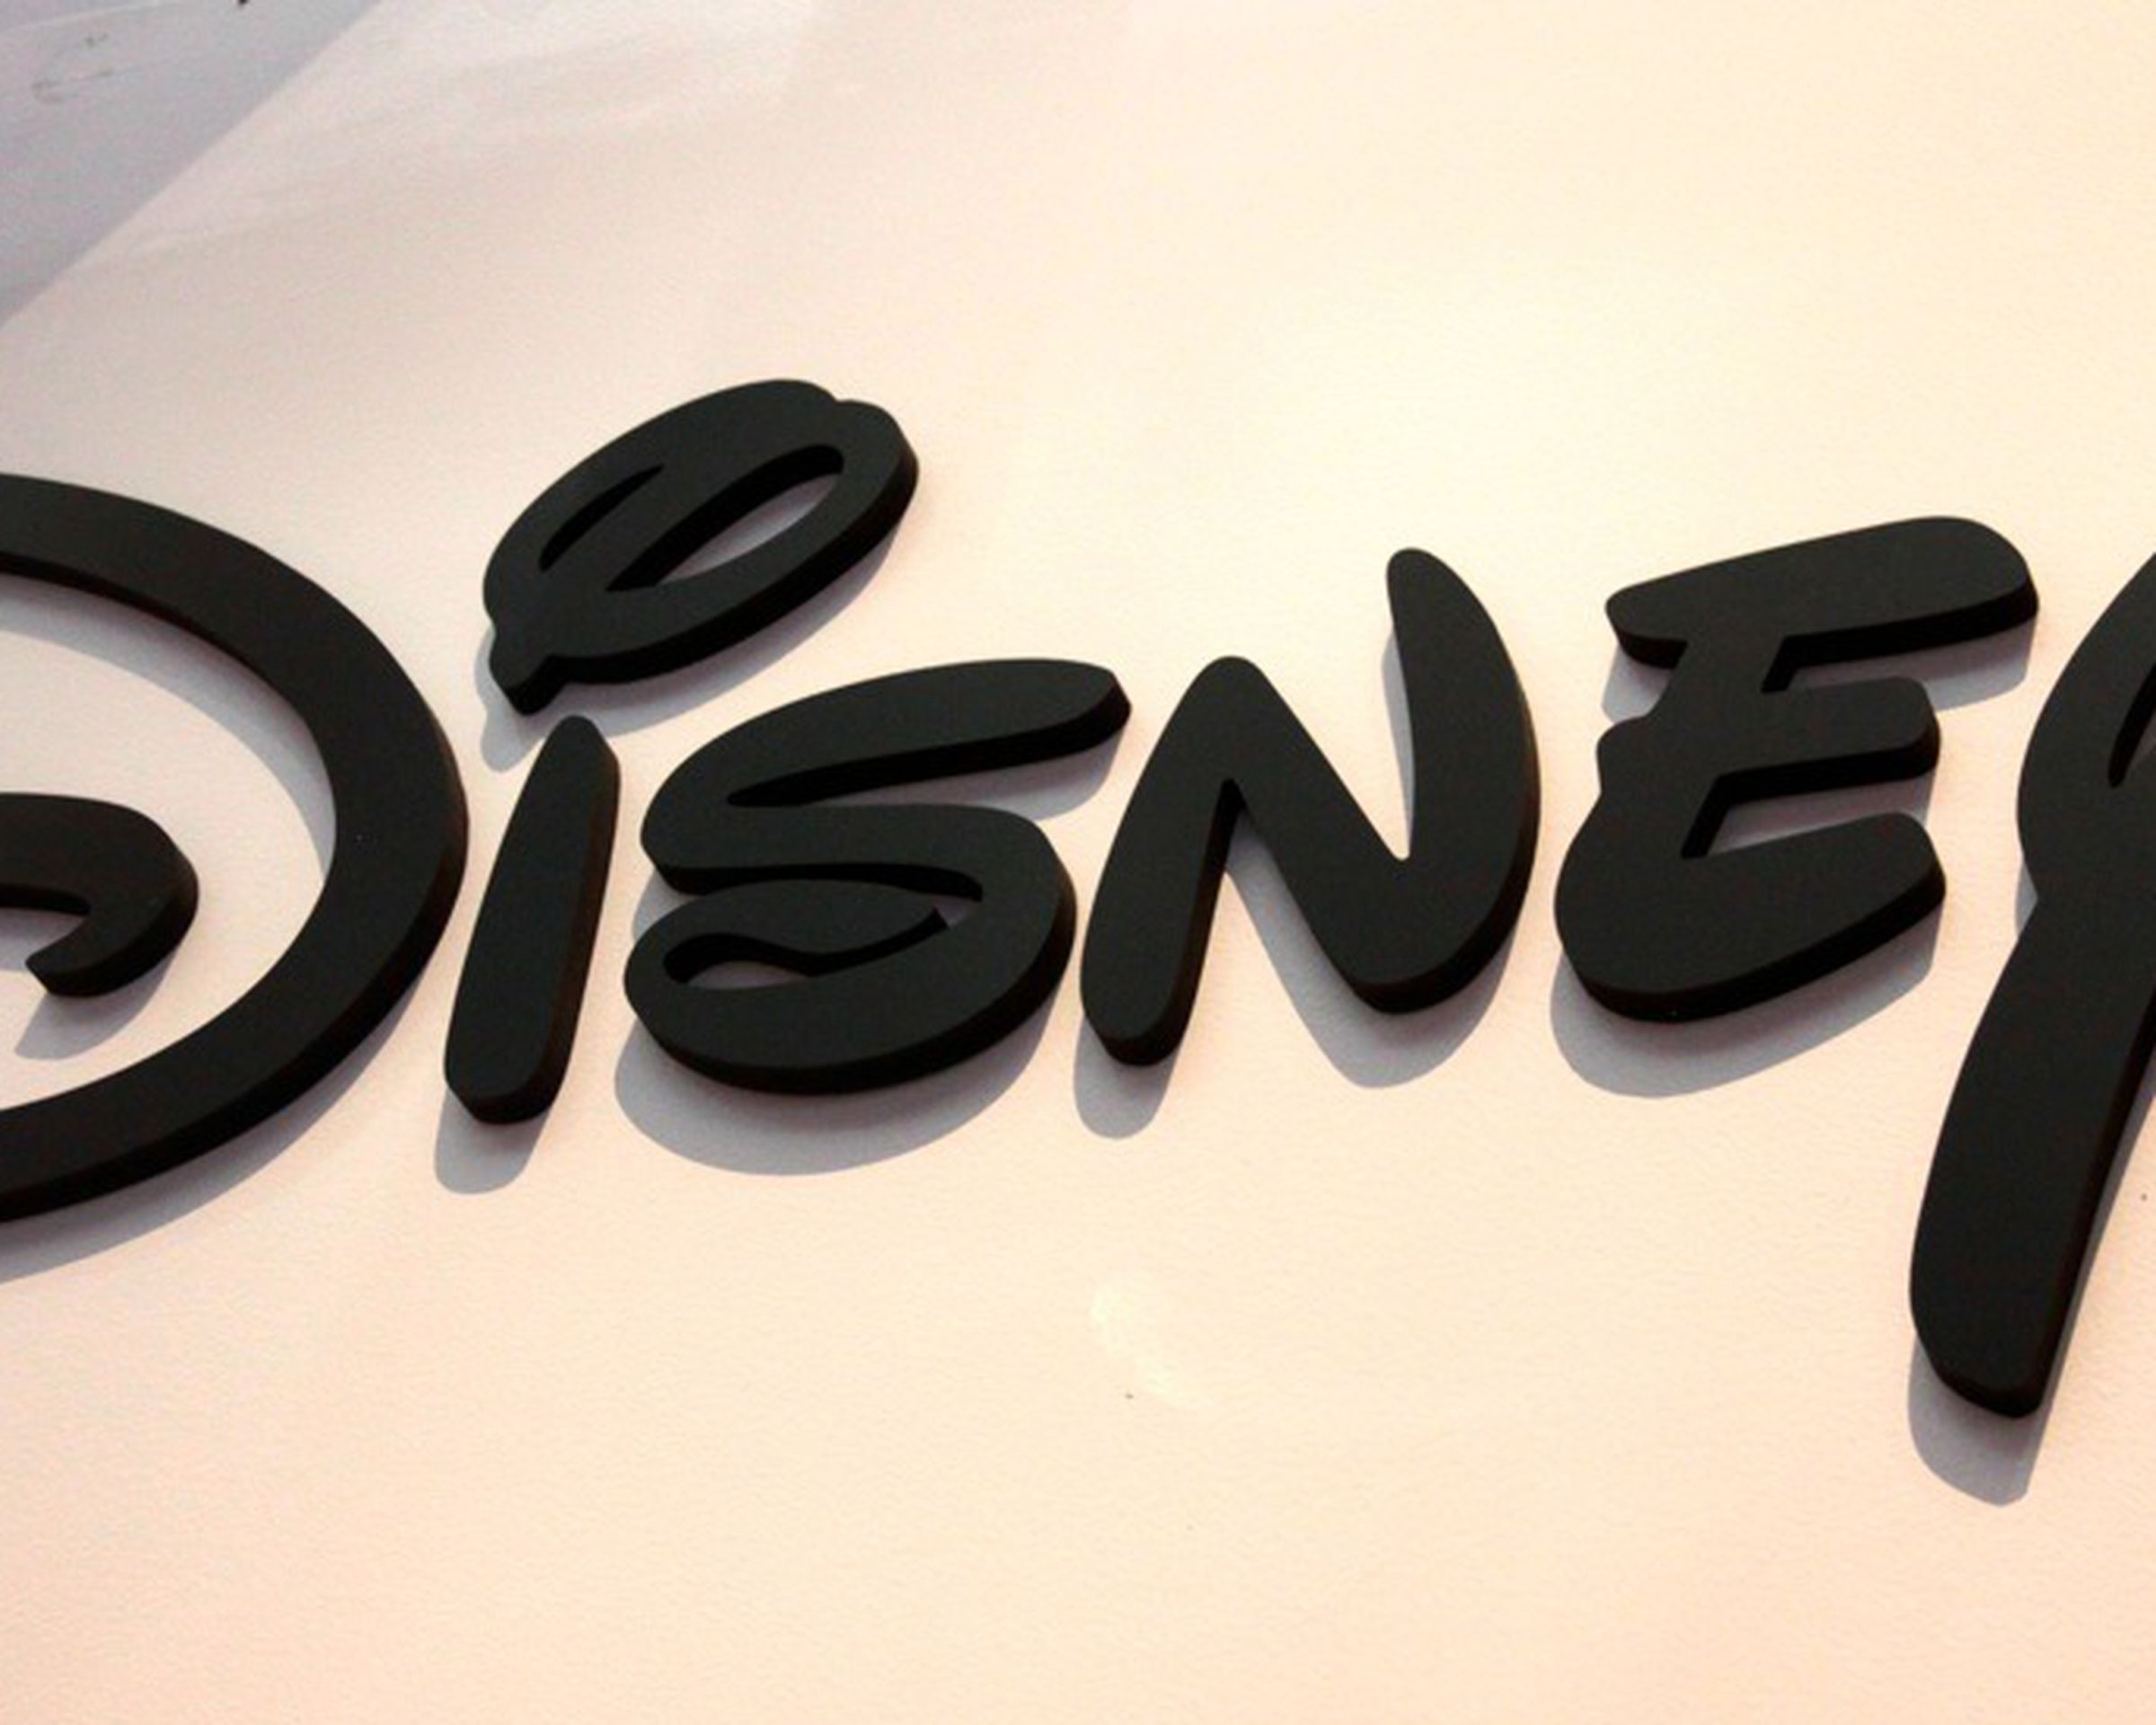 The Disney logo on a white background.